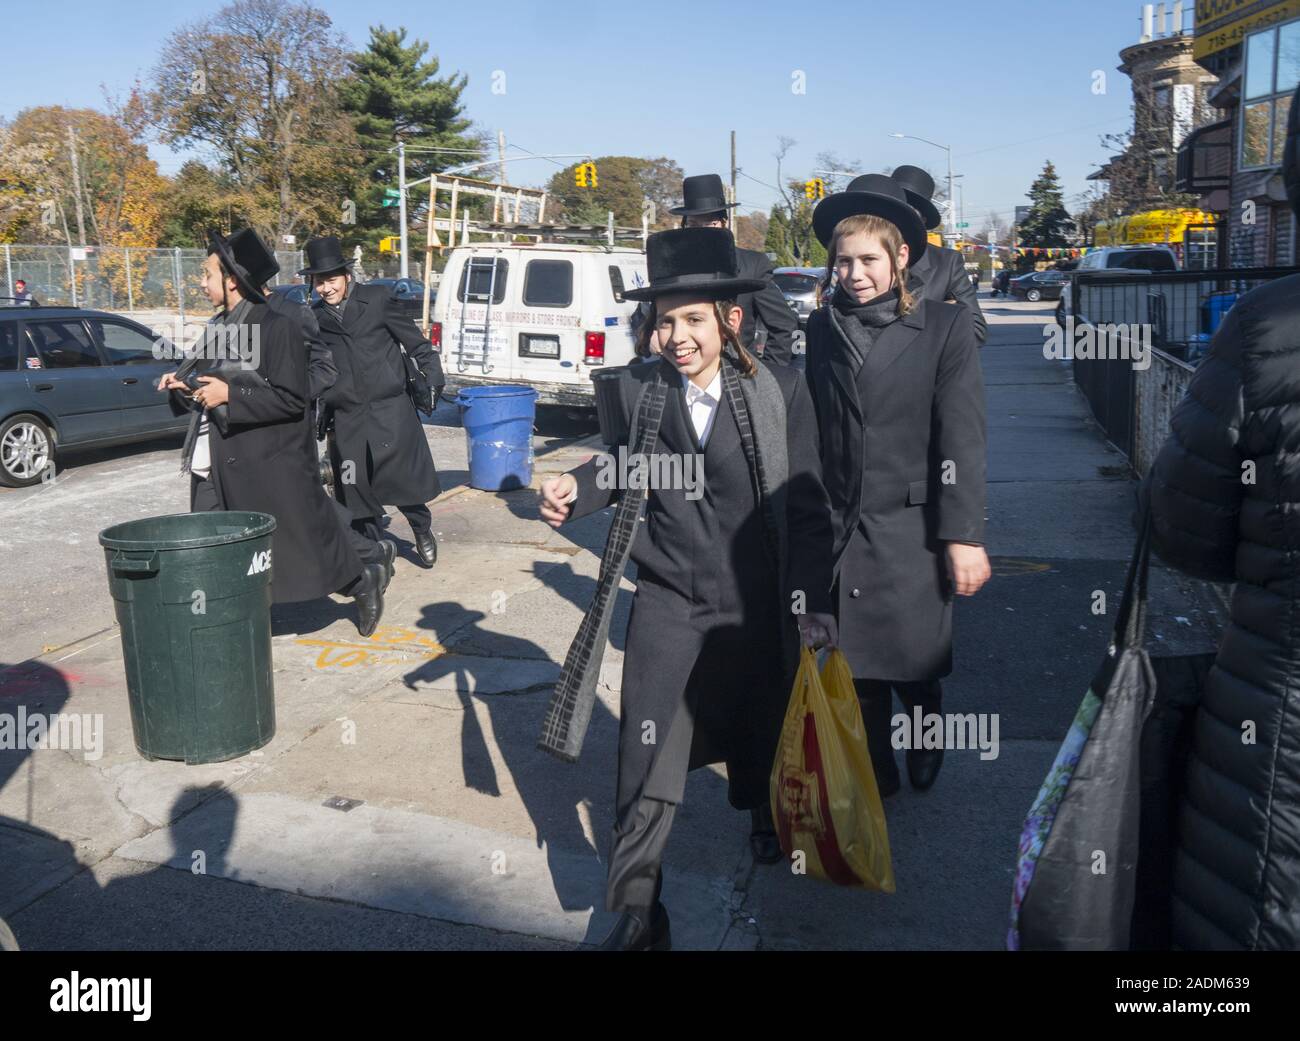 Orthodoxen jüdischen Jungen gekleidet in ihren persönlichen "Uniformen" auf der Straße nach der Schule im Borough Park, einer orthodoxen jüdischen Viertel in Brooklyn, New York. Stockfoto